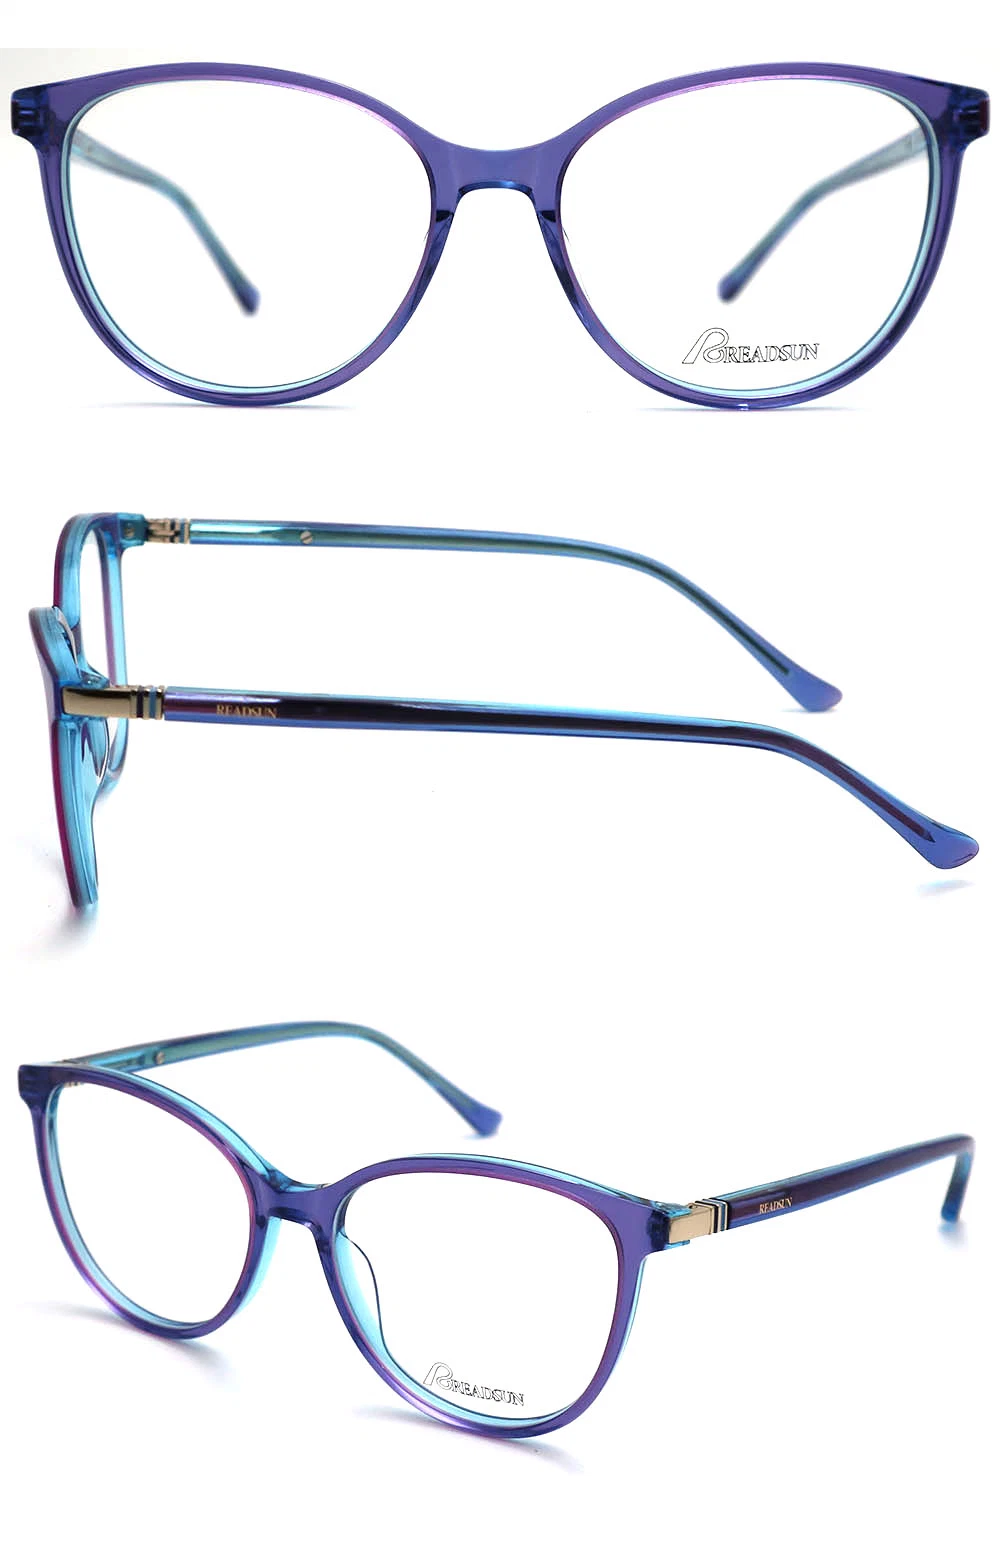 2023 New Stylish Design Unique Eyewear Fashion Acetate Optical Glasses Frame